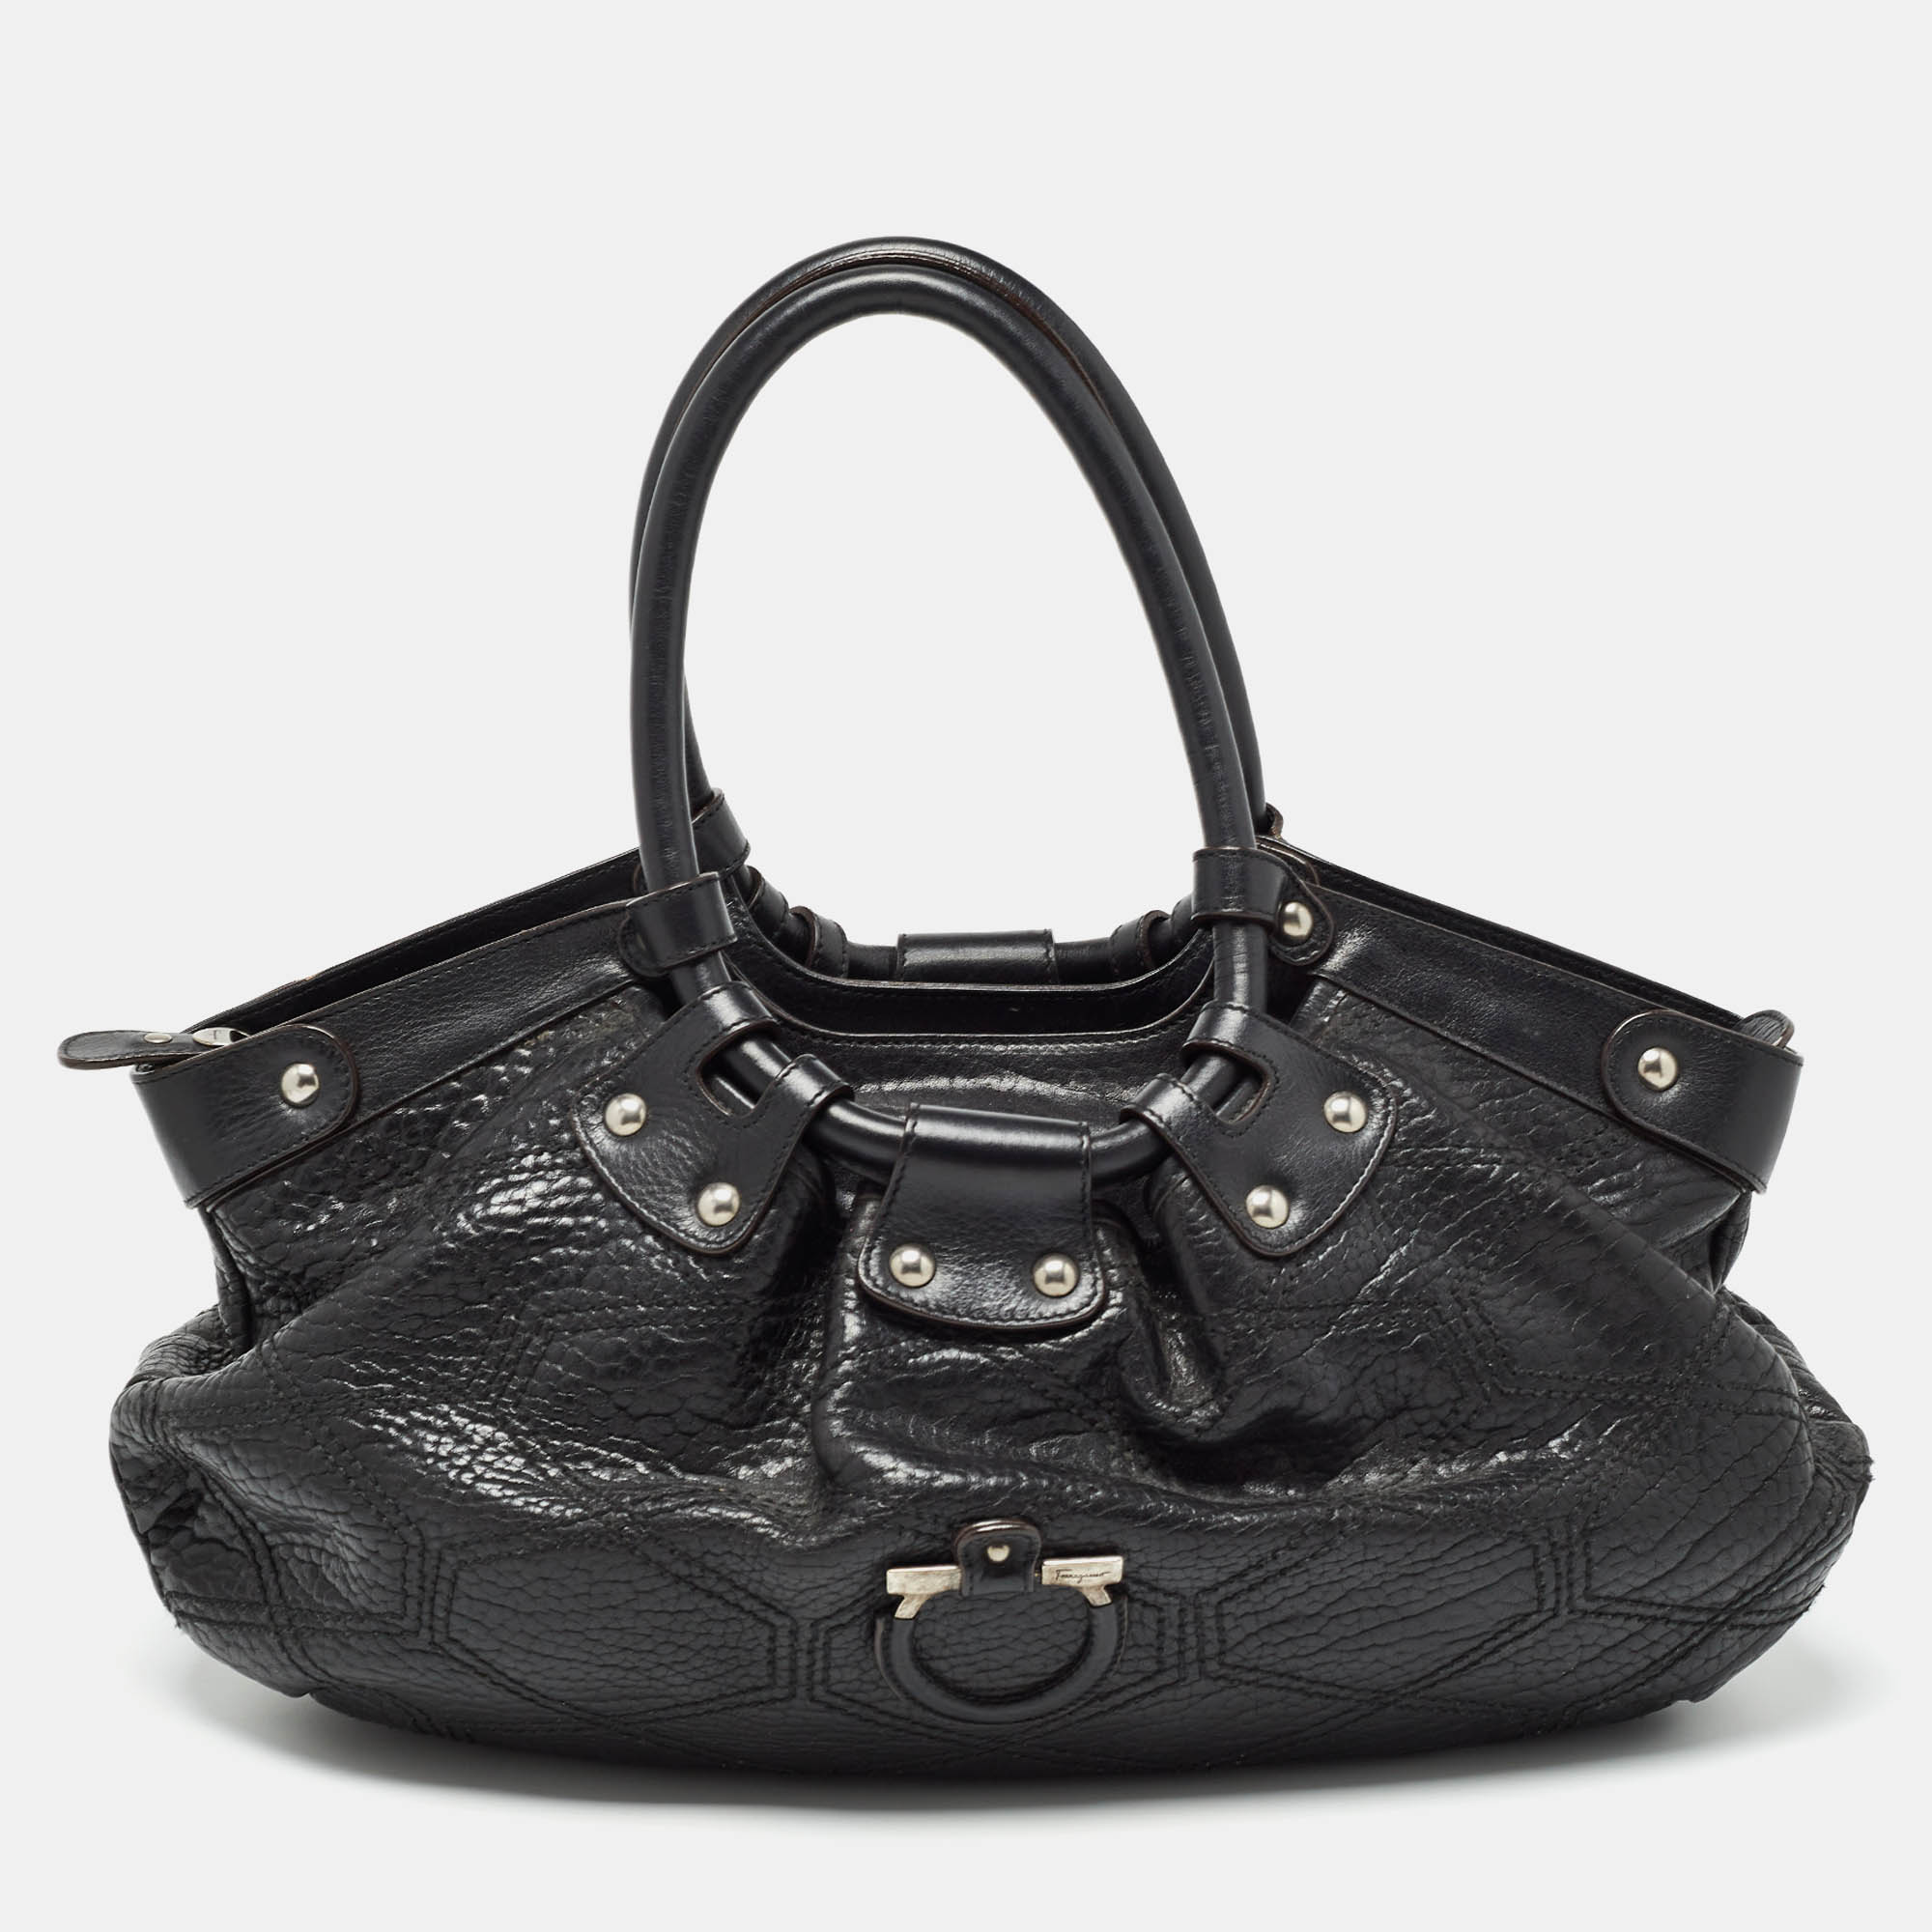 Salvatore ferragamo black pebbled leather satchel